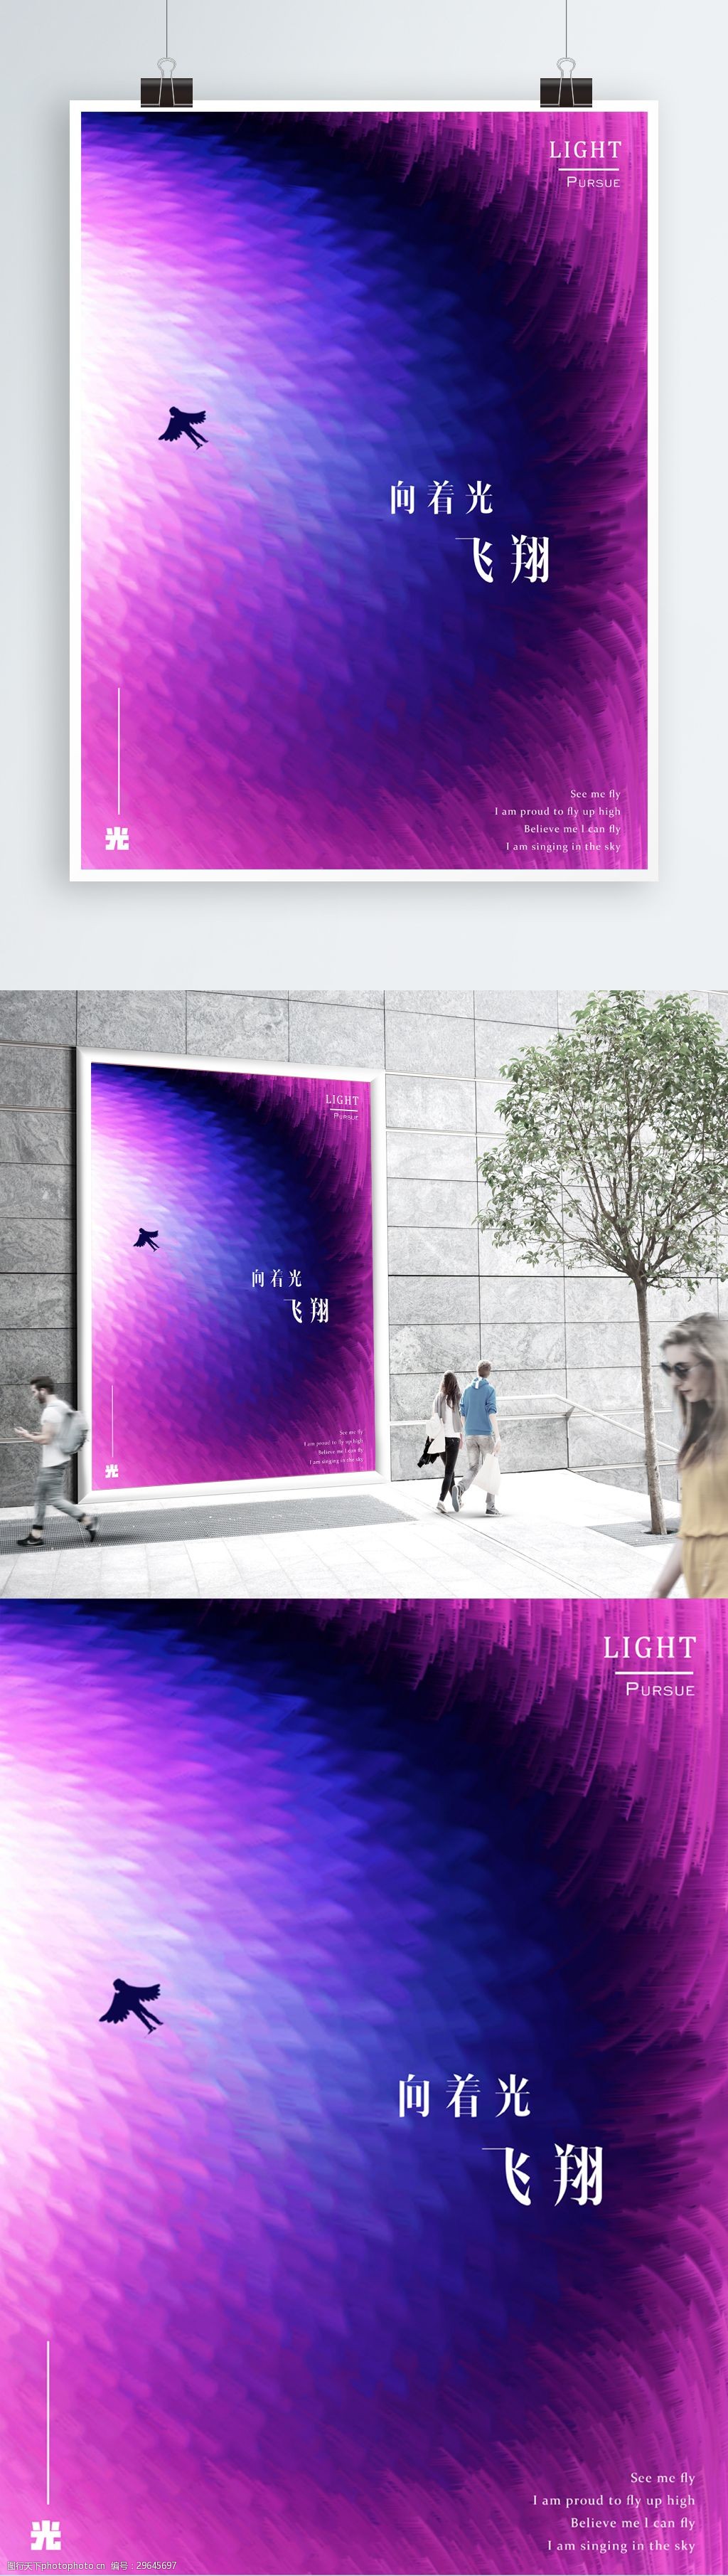 2018流行紫色炫酷合成商业海报设计紫外光